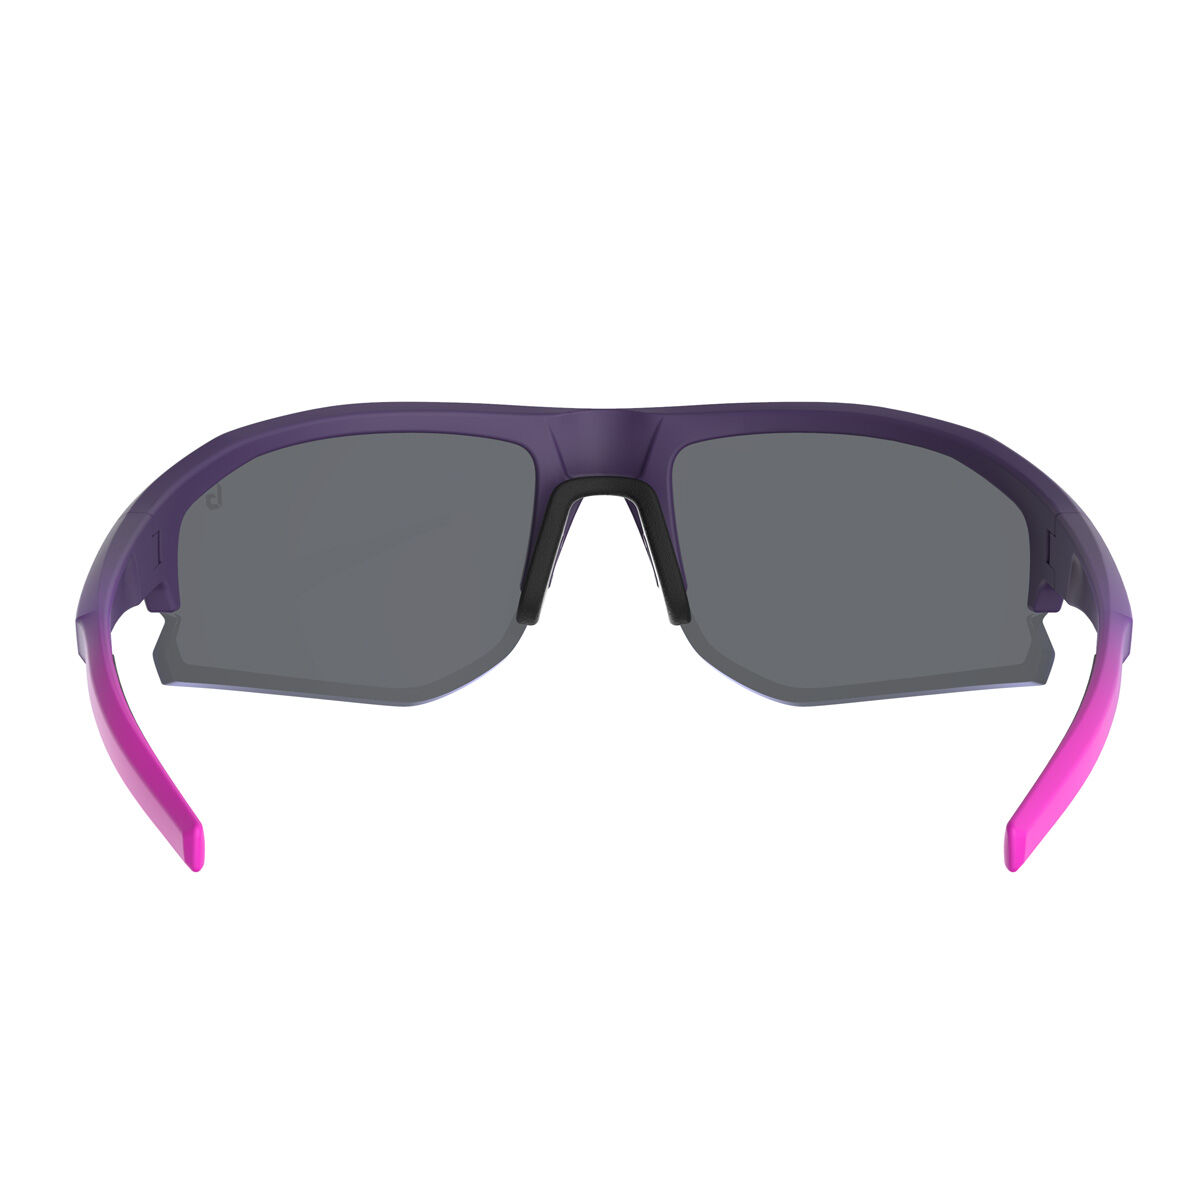 BOLT 2.0 S Performance Sunglasses | Bollé